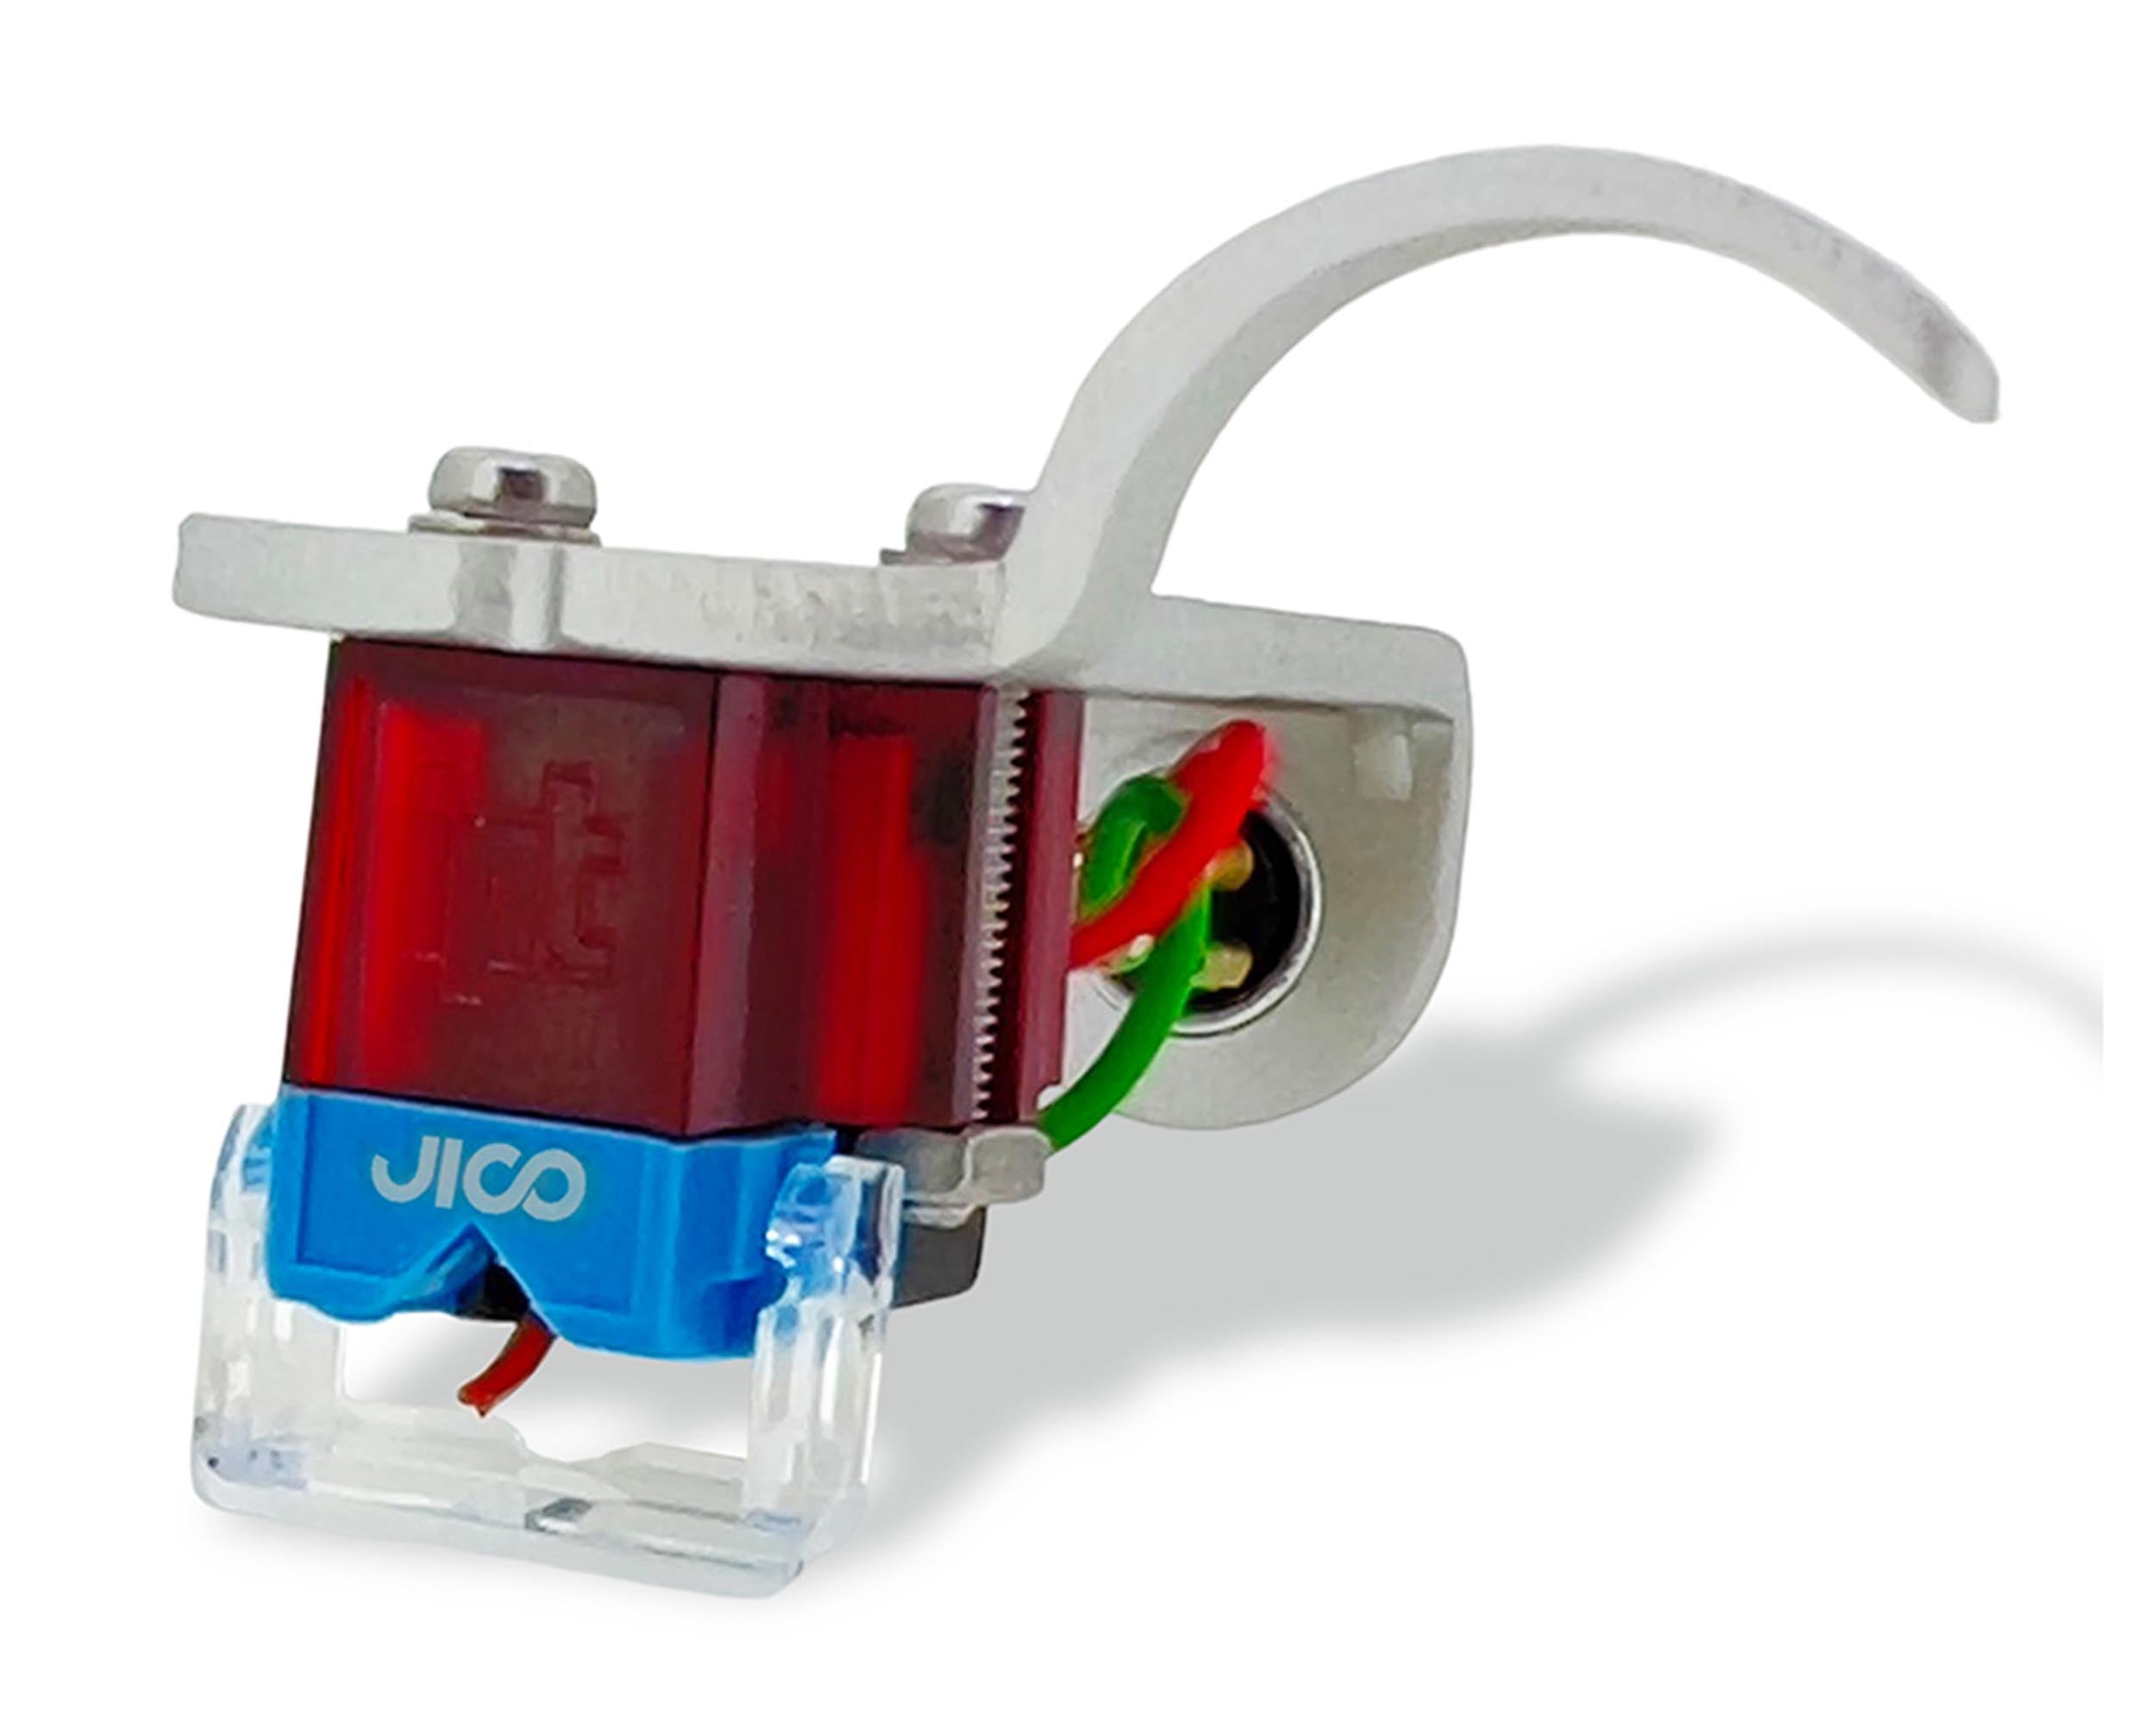 Jico J-AAC0634, Omnia Impact SD Cartridge Mounted on Silver Head Shell Jico